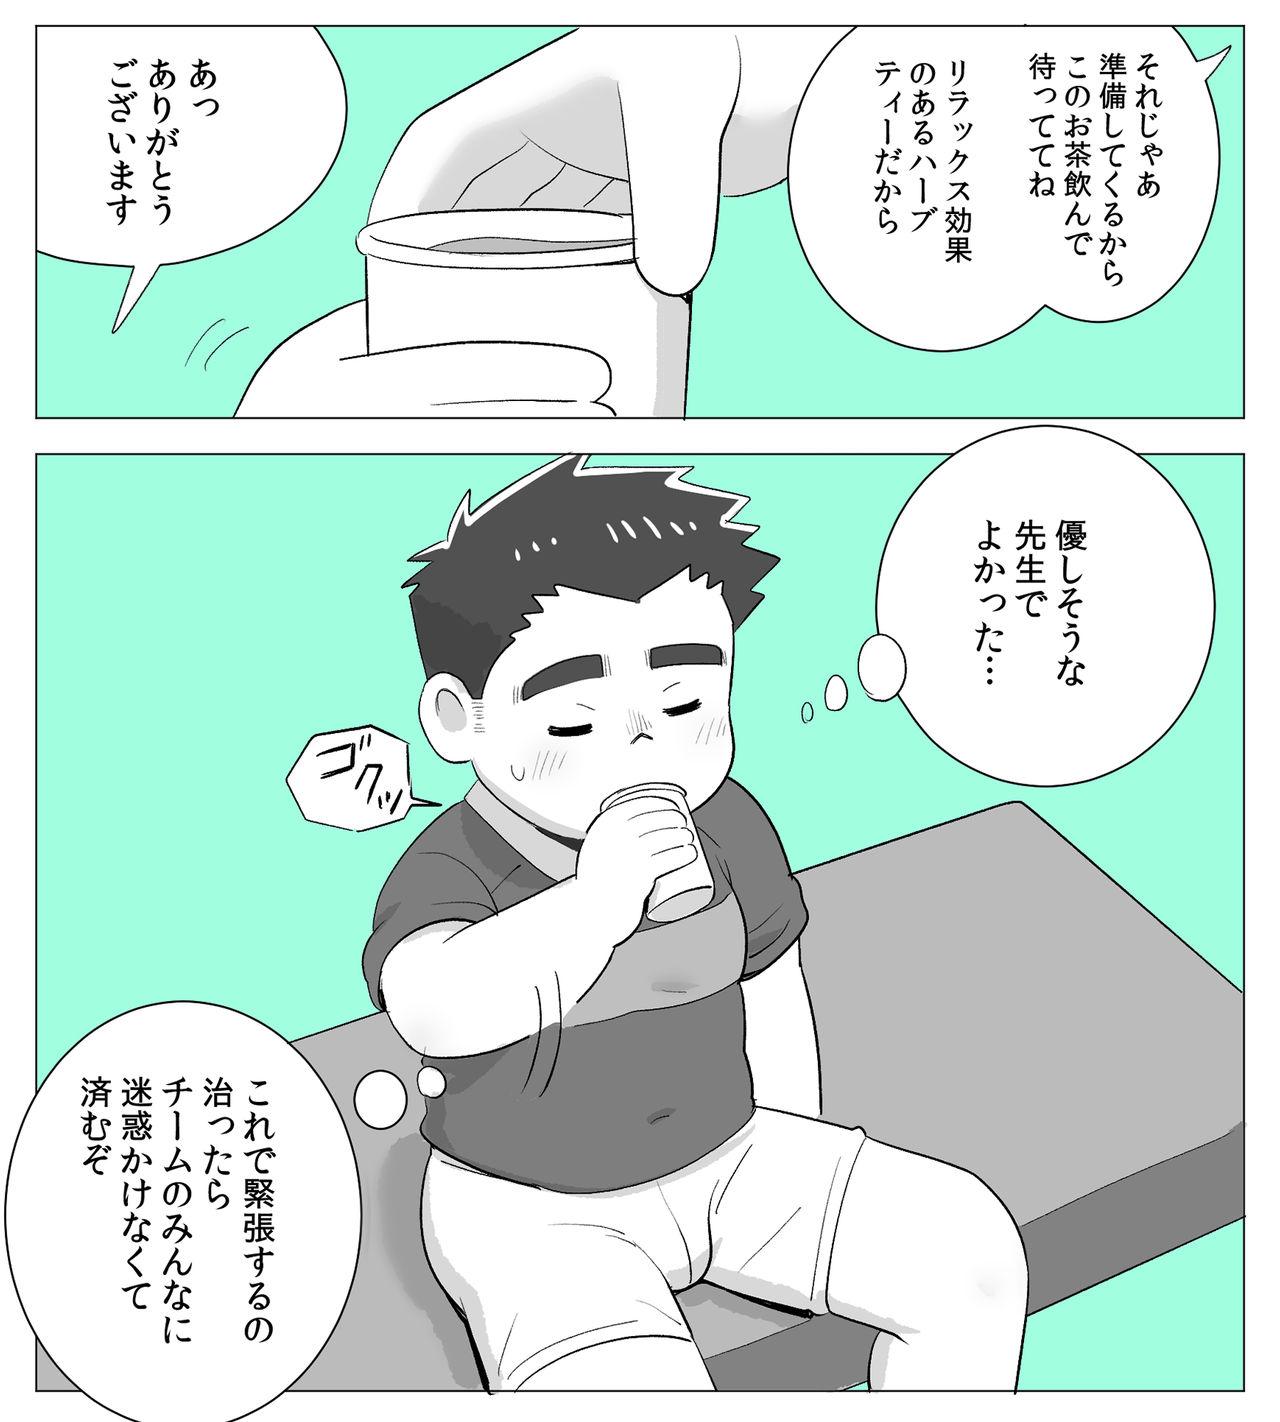 Daring obeccho - 短編漫画「施術にようこそ！1」 - Original Solo - Page 4